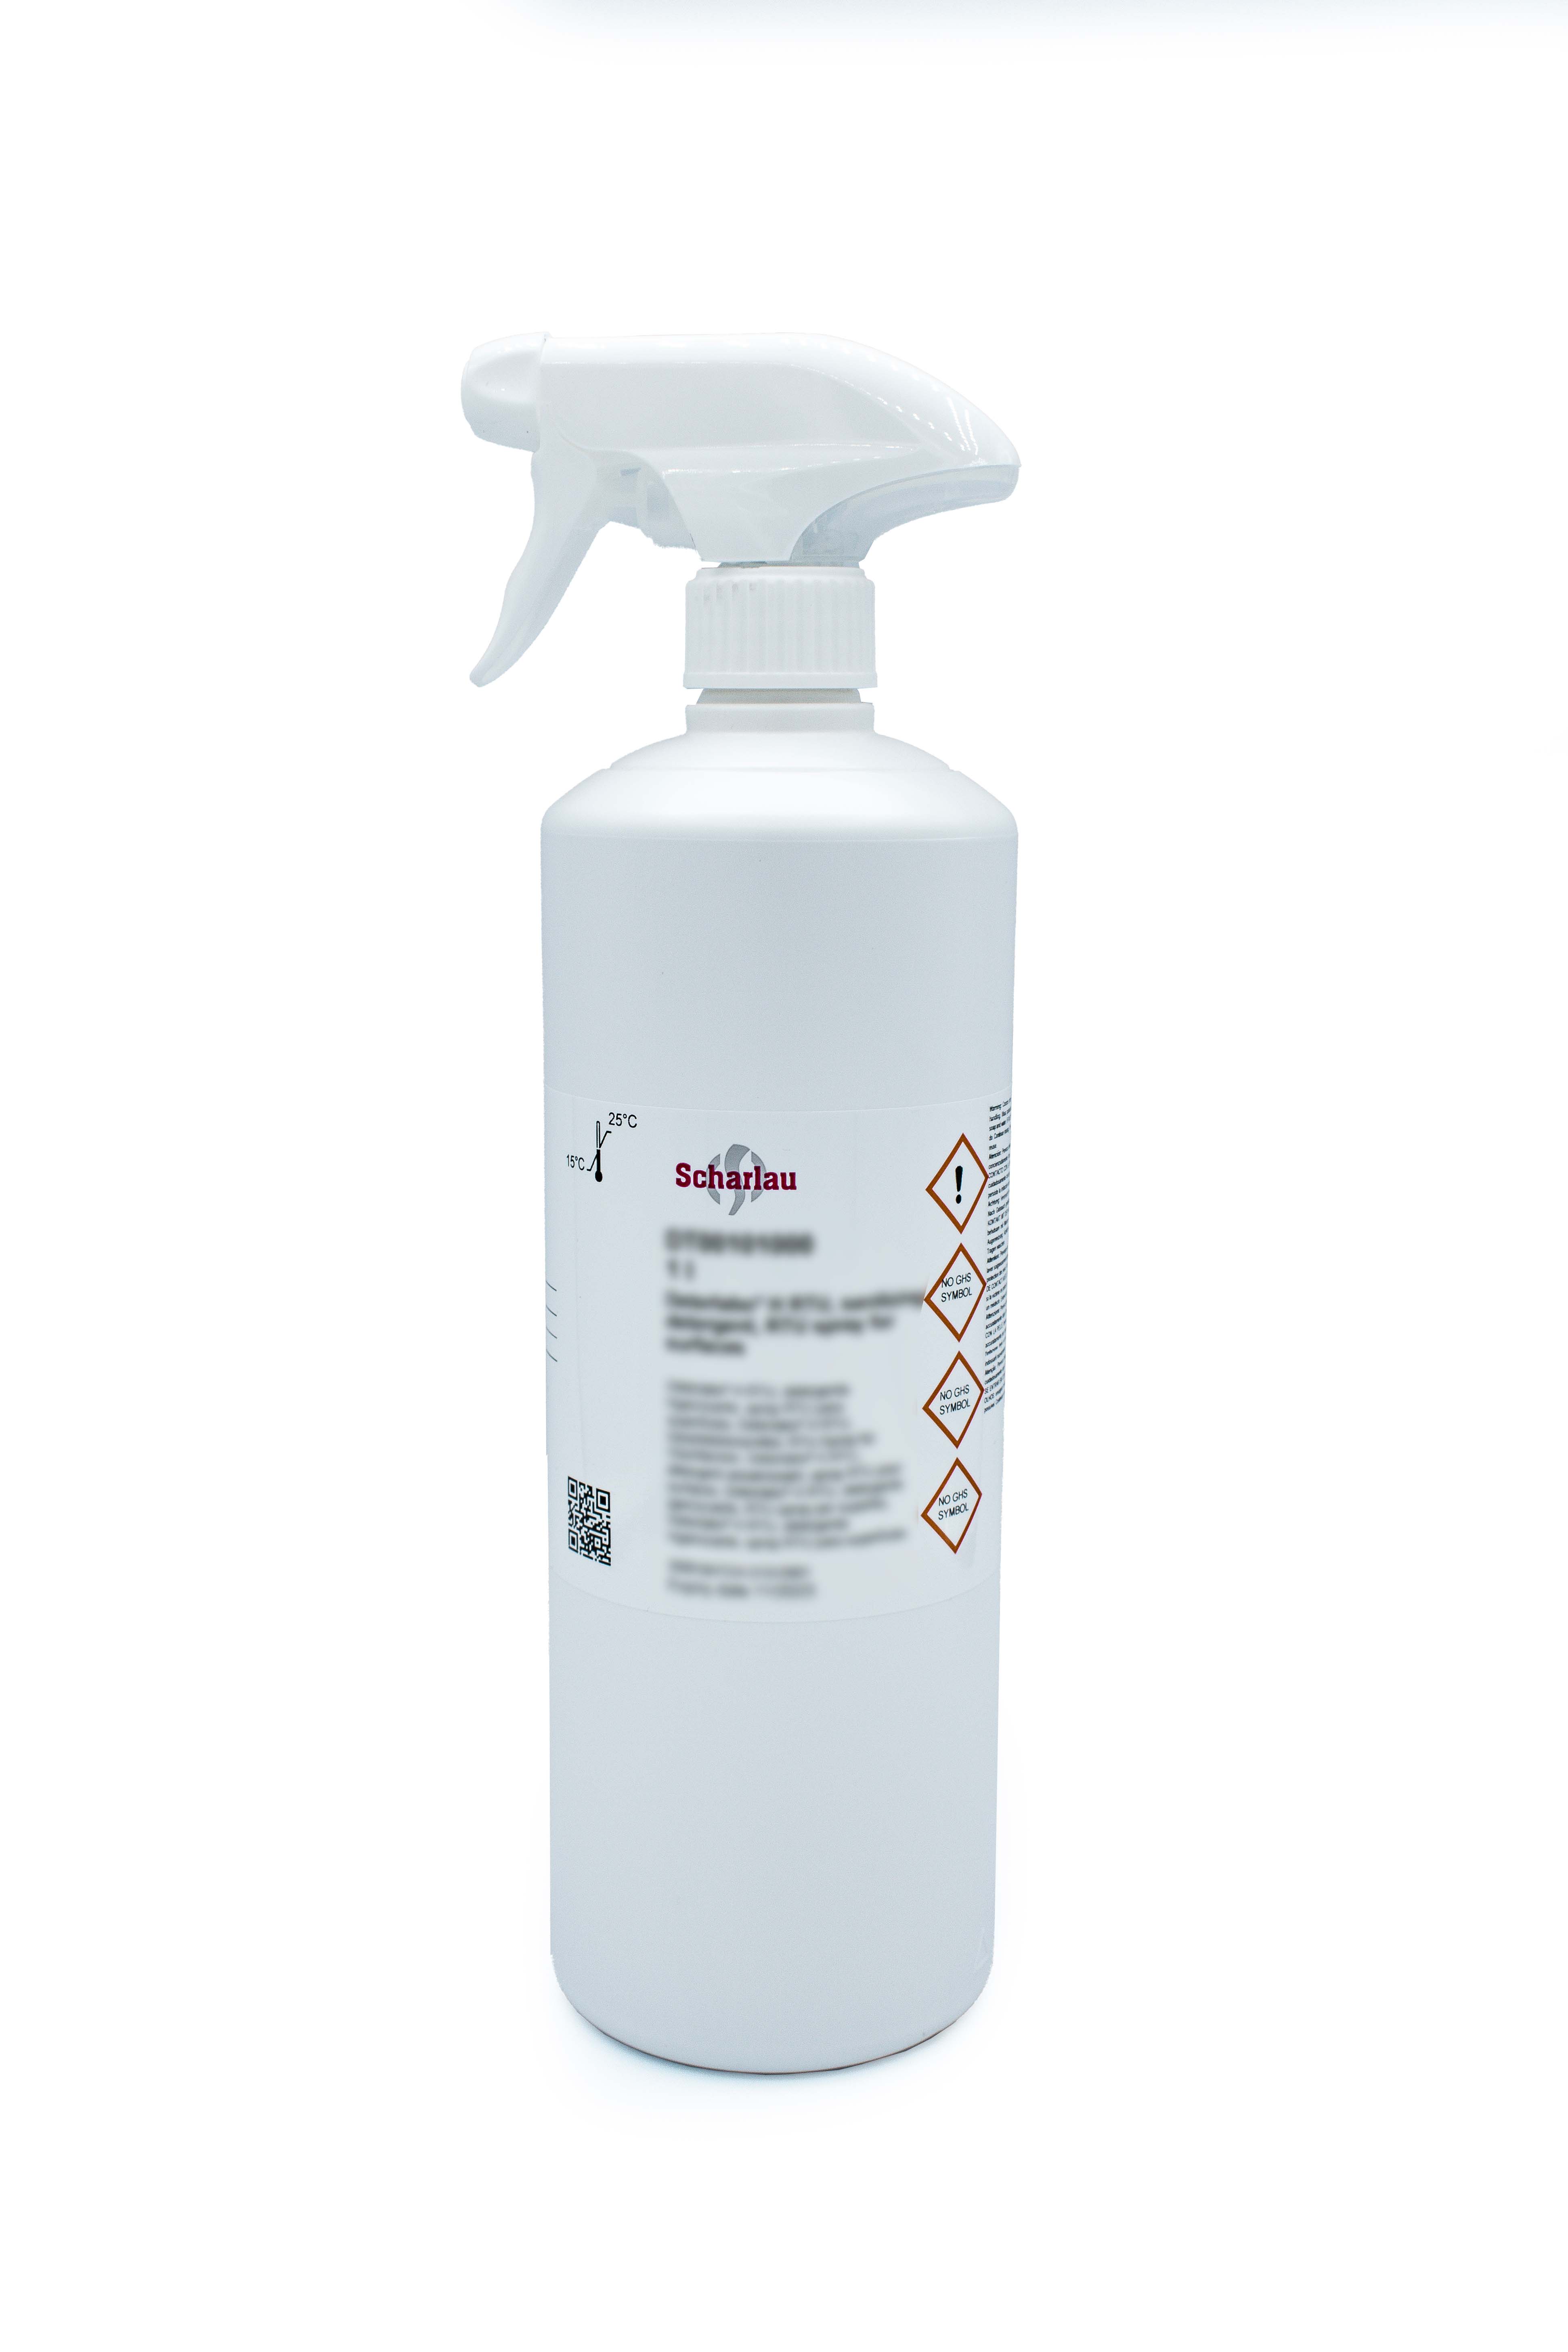 Deterlabo® H RTU, detergente higienizante, spray RTU para superficies